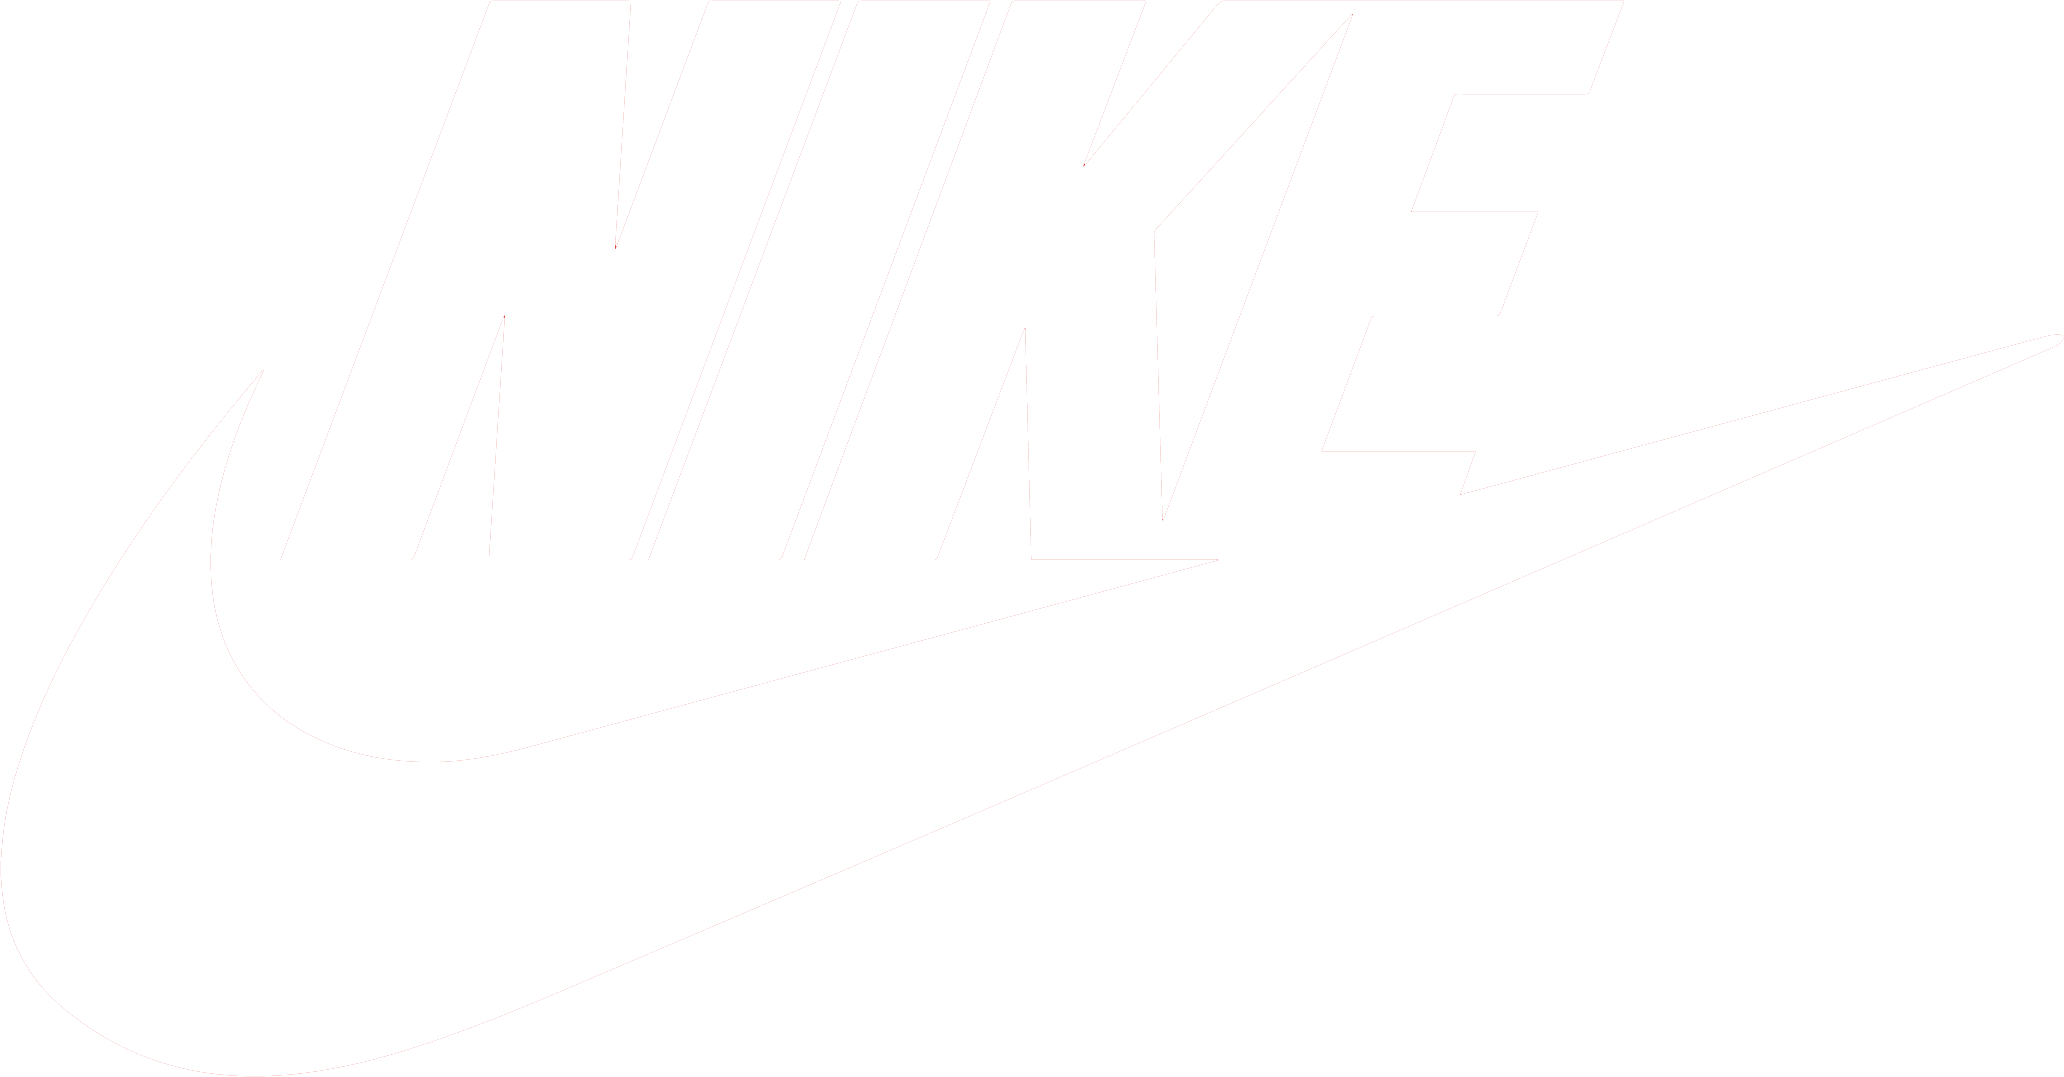 Black Nike Logo - Nike logo PNG images free download